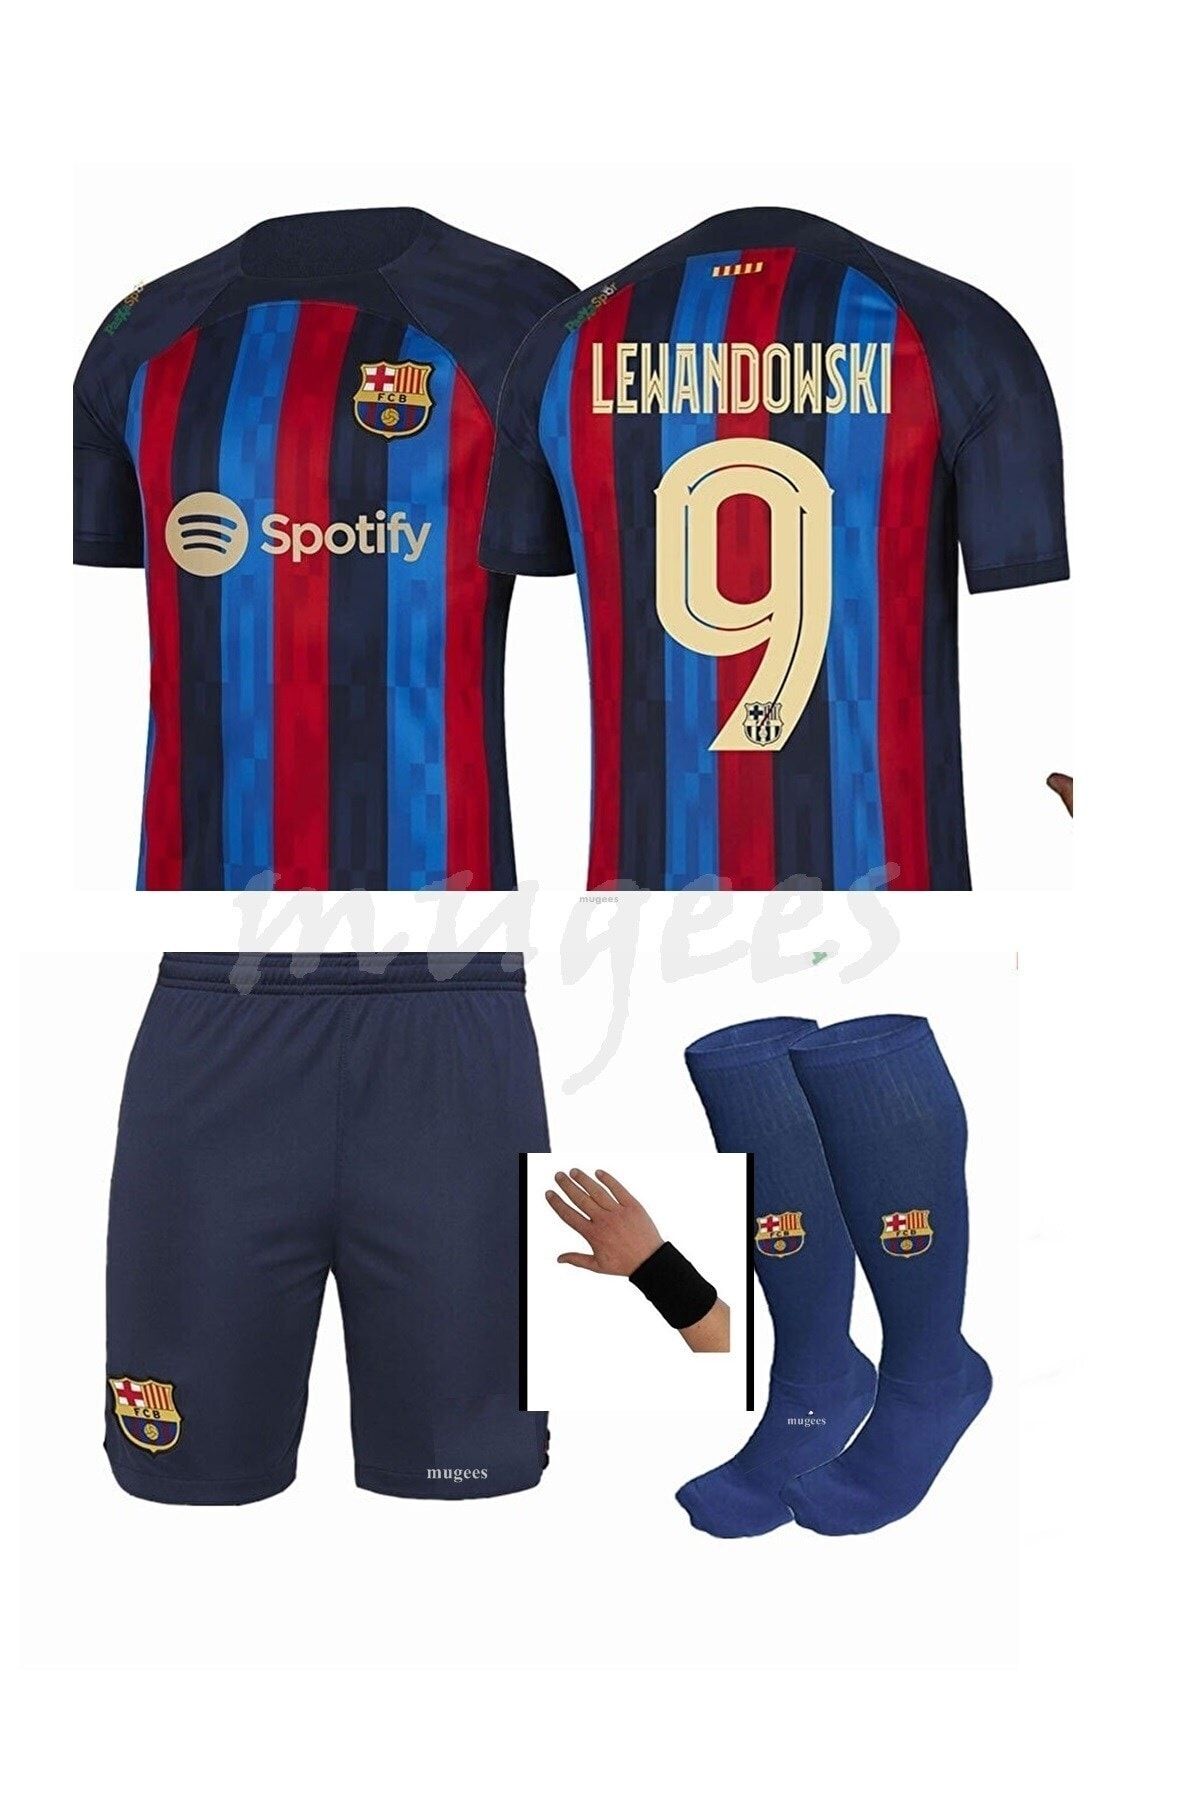 mugees Barcelona Lewandowski Erkek Çocuk Forması Takımı 4 Lü Set